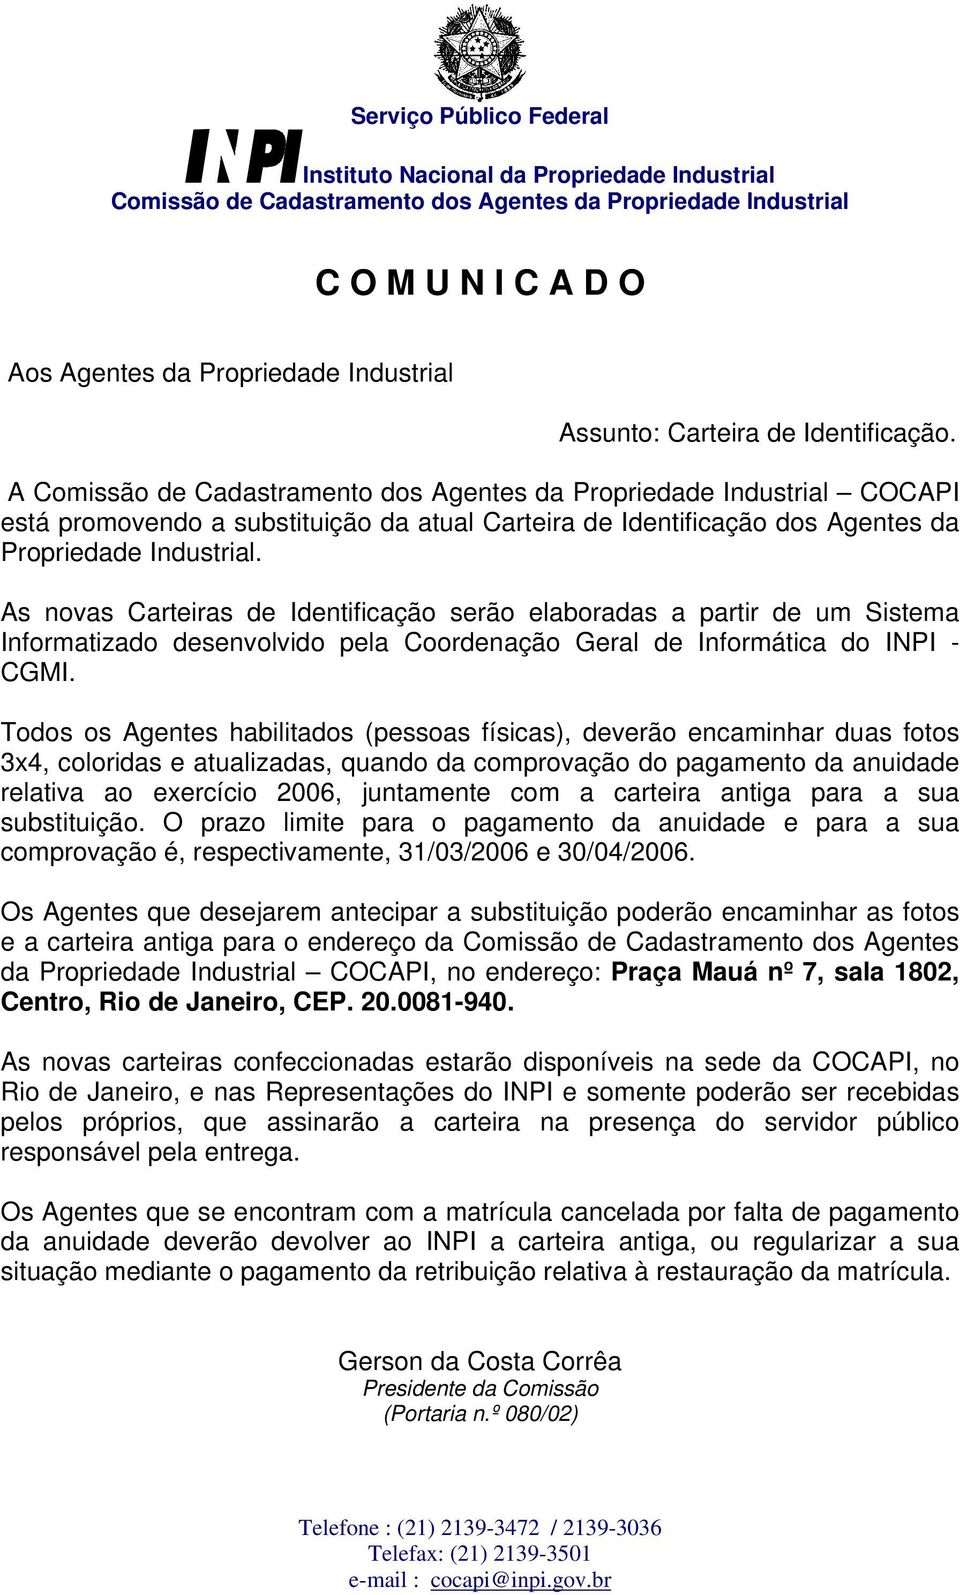 A Comissão de Cadastramento dos Agentes da Propriedade Industrial COCAPI está promovendo a substituição da atual Carteira de Identificação dos Agentes da Propriedade Industrial.